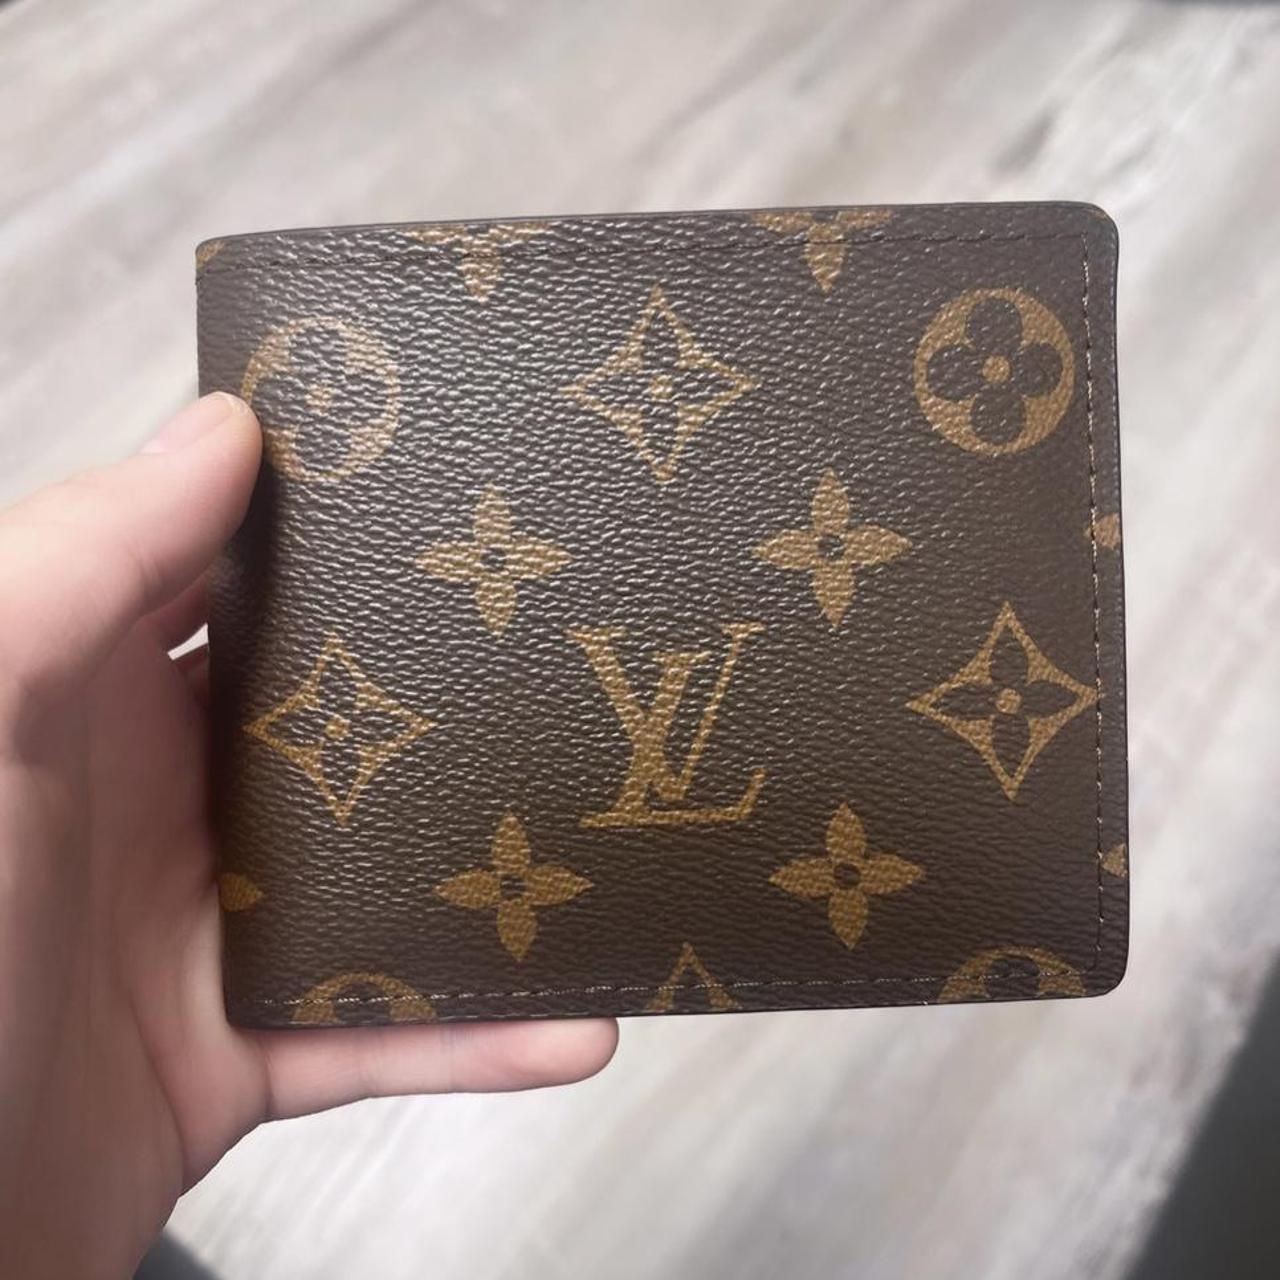 Louis Vuitton Wallet - Depop